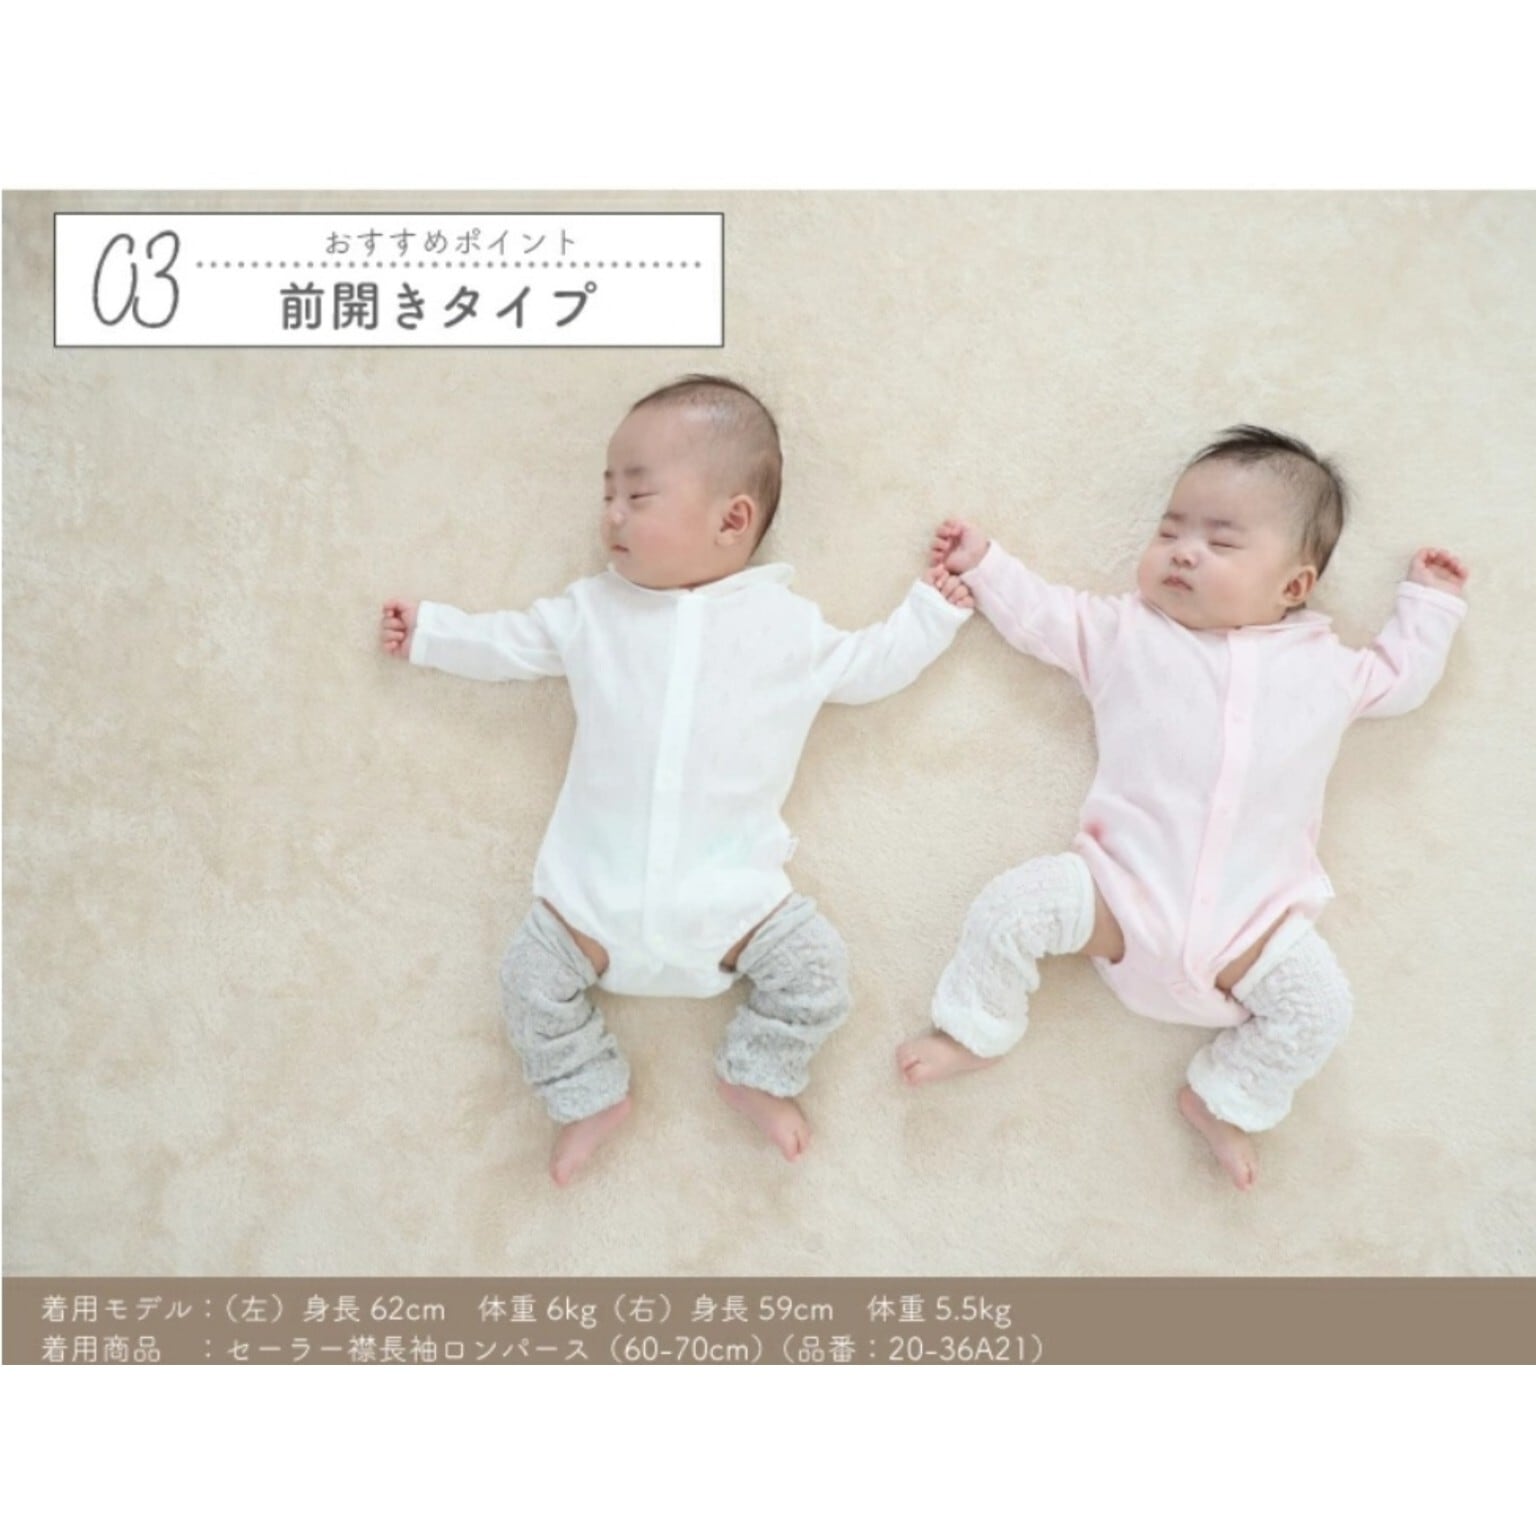 長袖ロンパース】 PUPO プーポ #20-36A21 セーラー襟 赤ちゃん ベビー